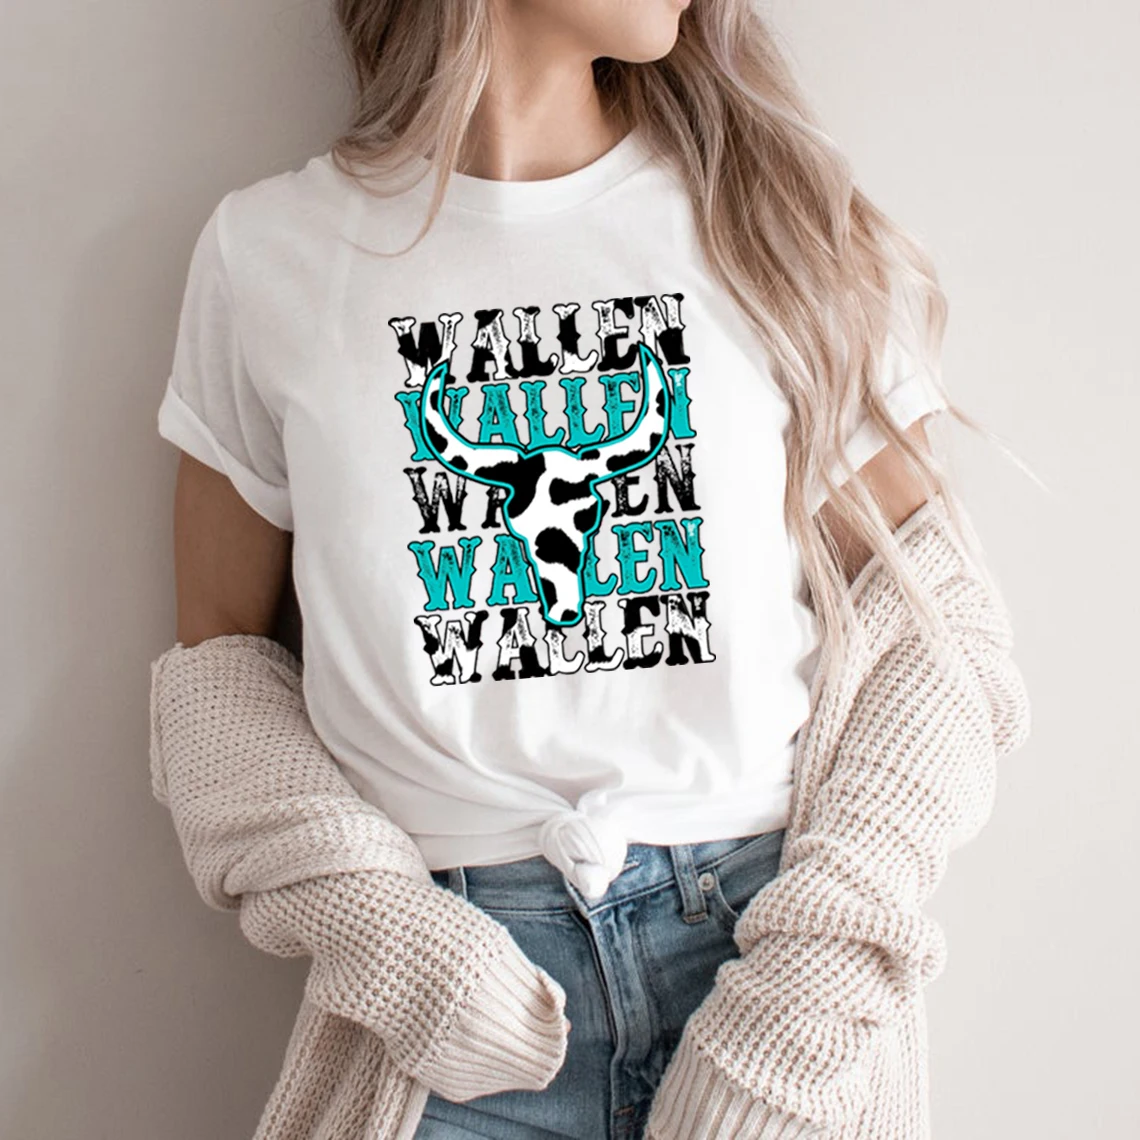 

Винтажная футболка с изображением Wallen в западном стиле, футболка с изображением коров, футболки с рисунком в стиле кантри, музыки, мужские и женские футболки, ретро футболки в стиле Wallen, топы